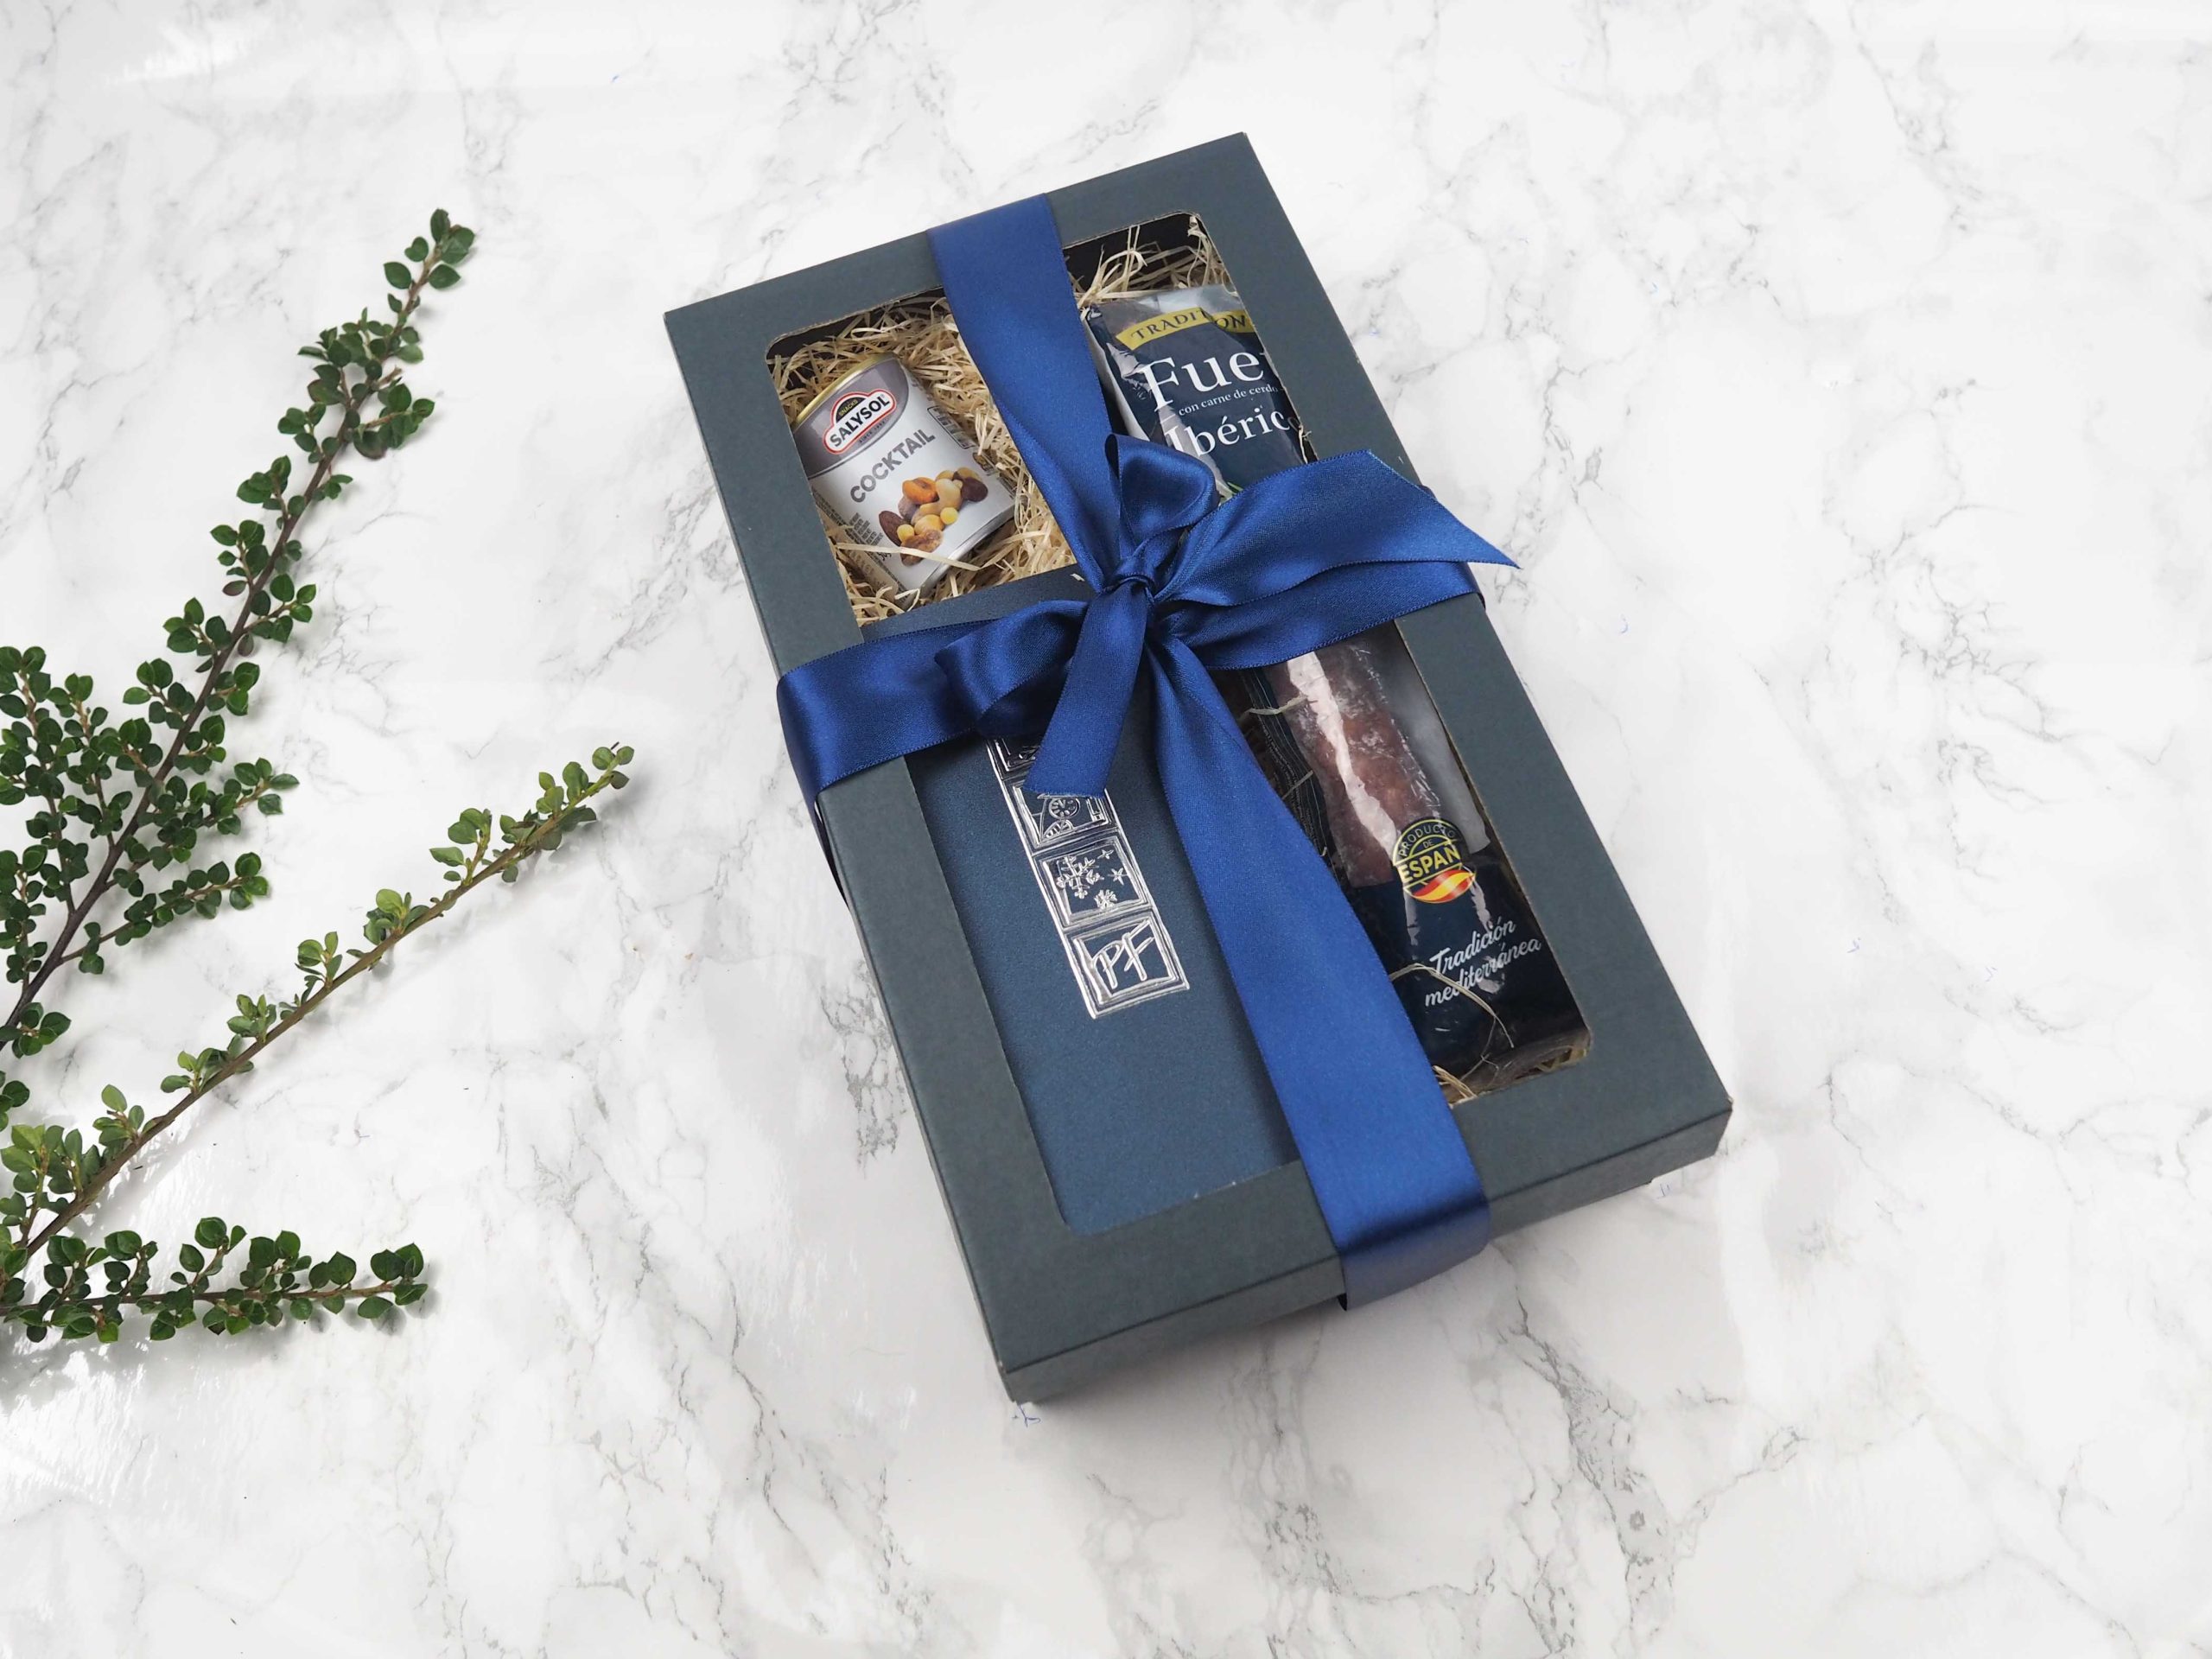 Dárkový balíček Nádech modré v sobě obsahuje mix sušených plodů, novoročenku a fuet Ibérico.